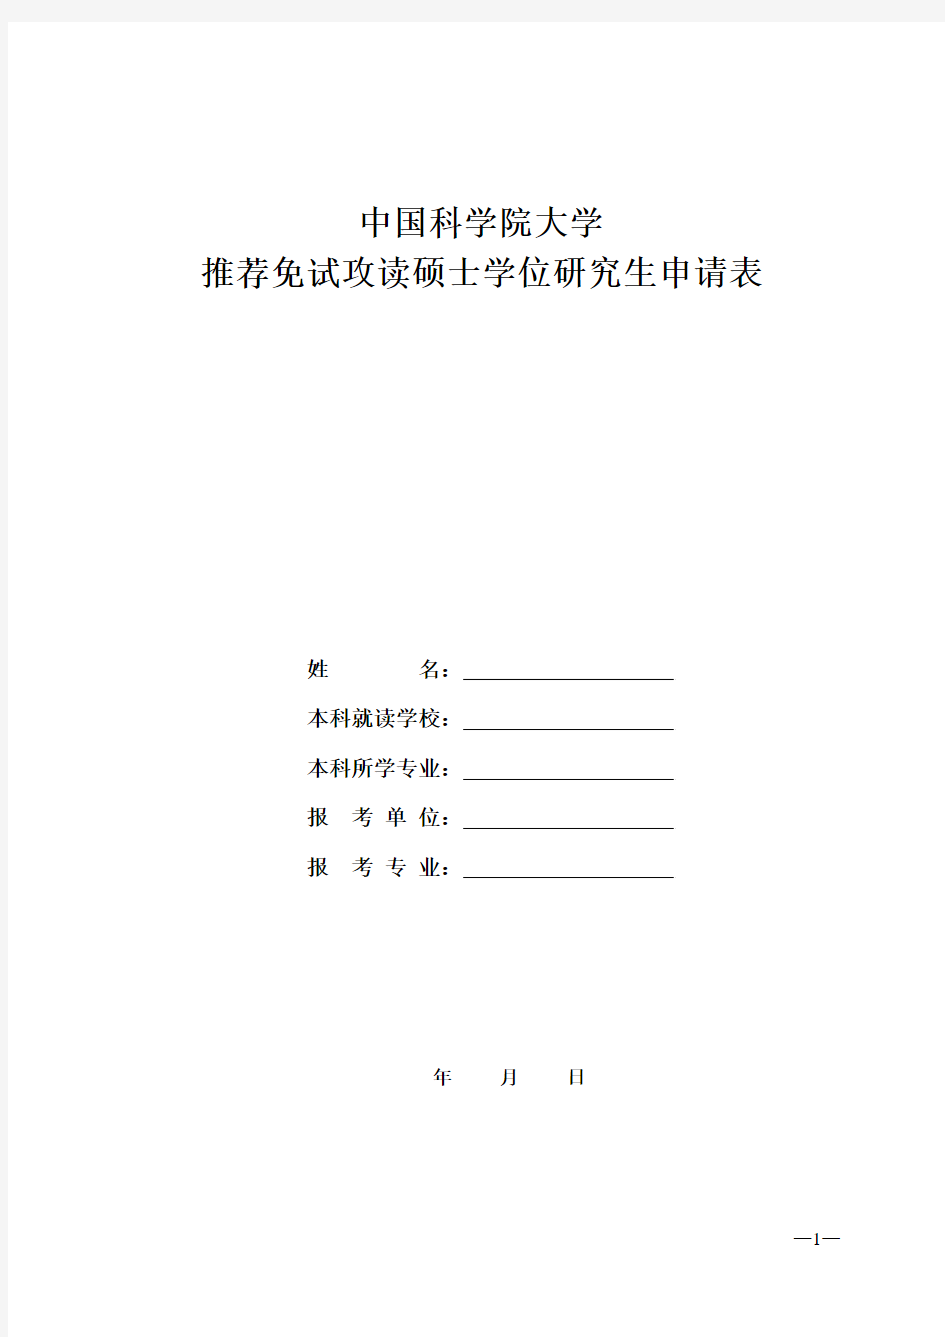 《中国科学院大学推荐免试攻读硕士学位研究生申请表》_359